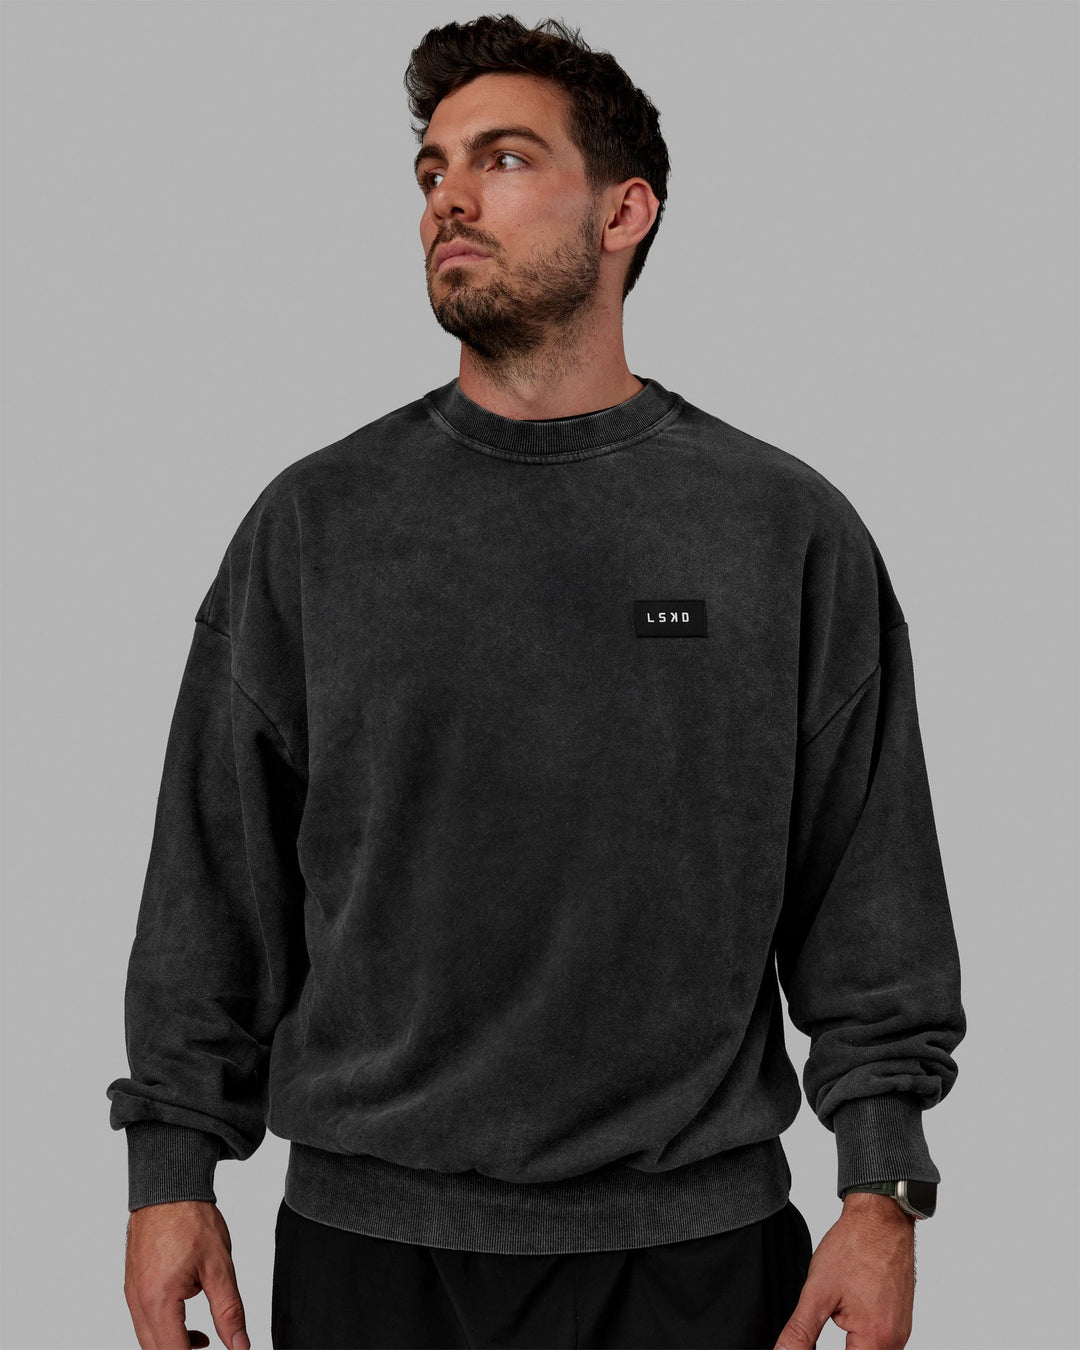 Man wearing Unisex Washed Segmented Sweater Oversize - Black